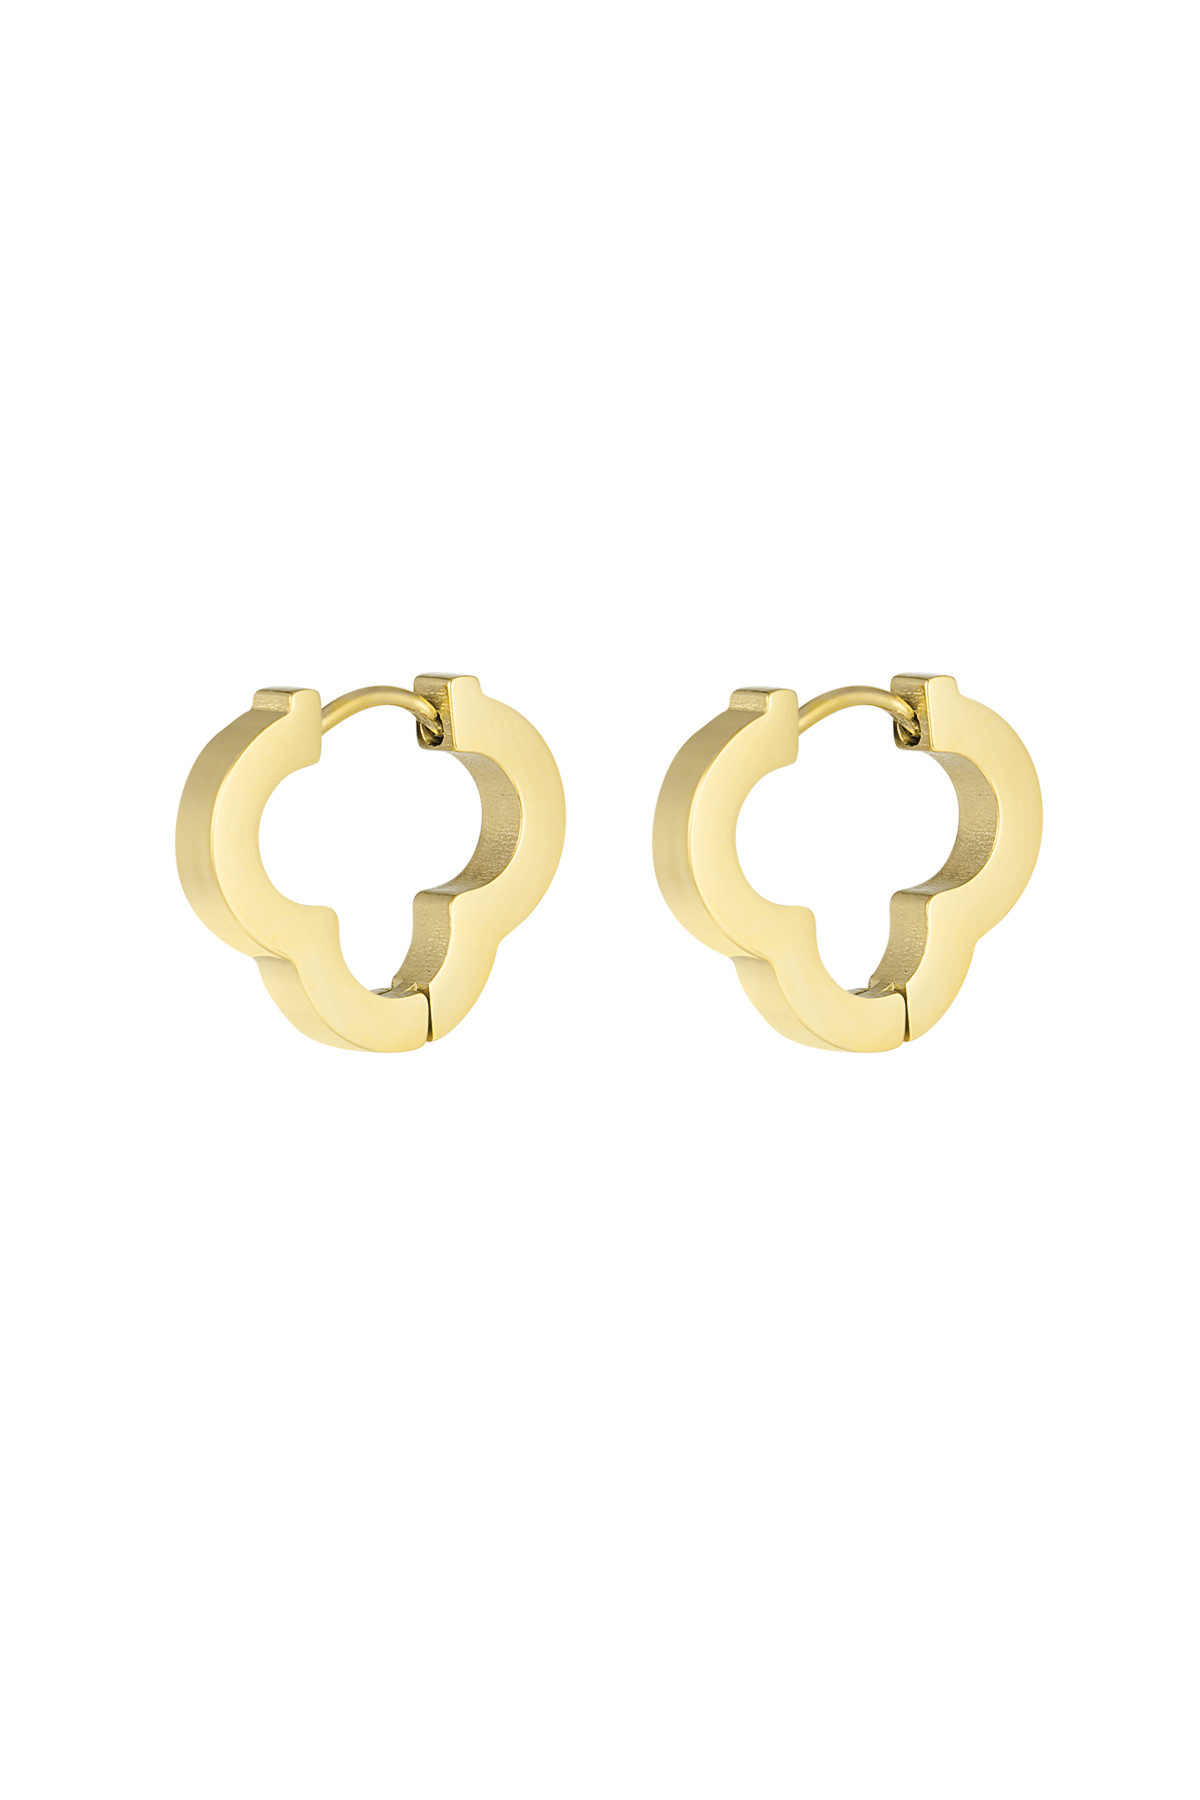 Basic clover earrings large - gold 